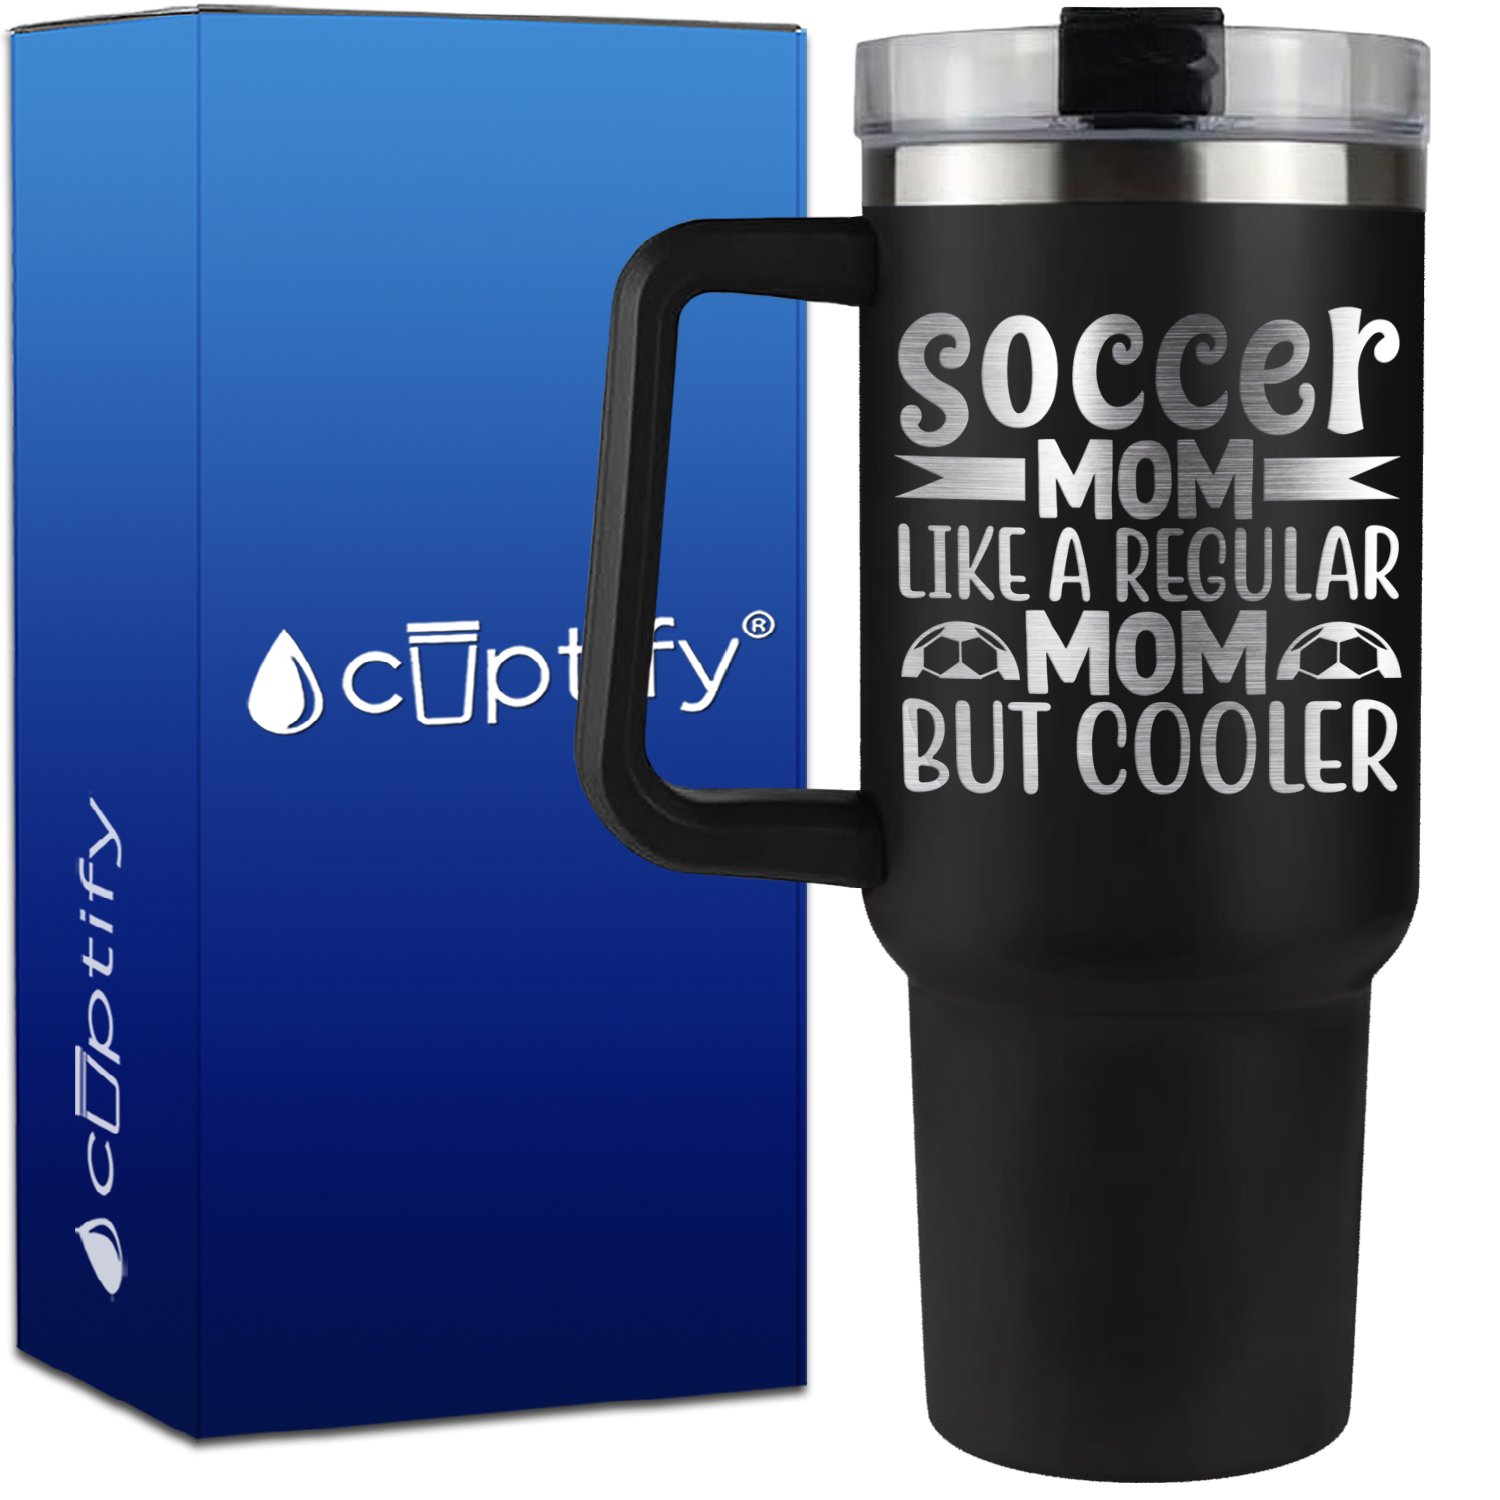 Soccer Mom Like a Regular but Cooler on 40oz Soccer Traveler Mug